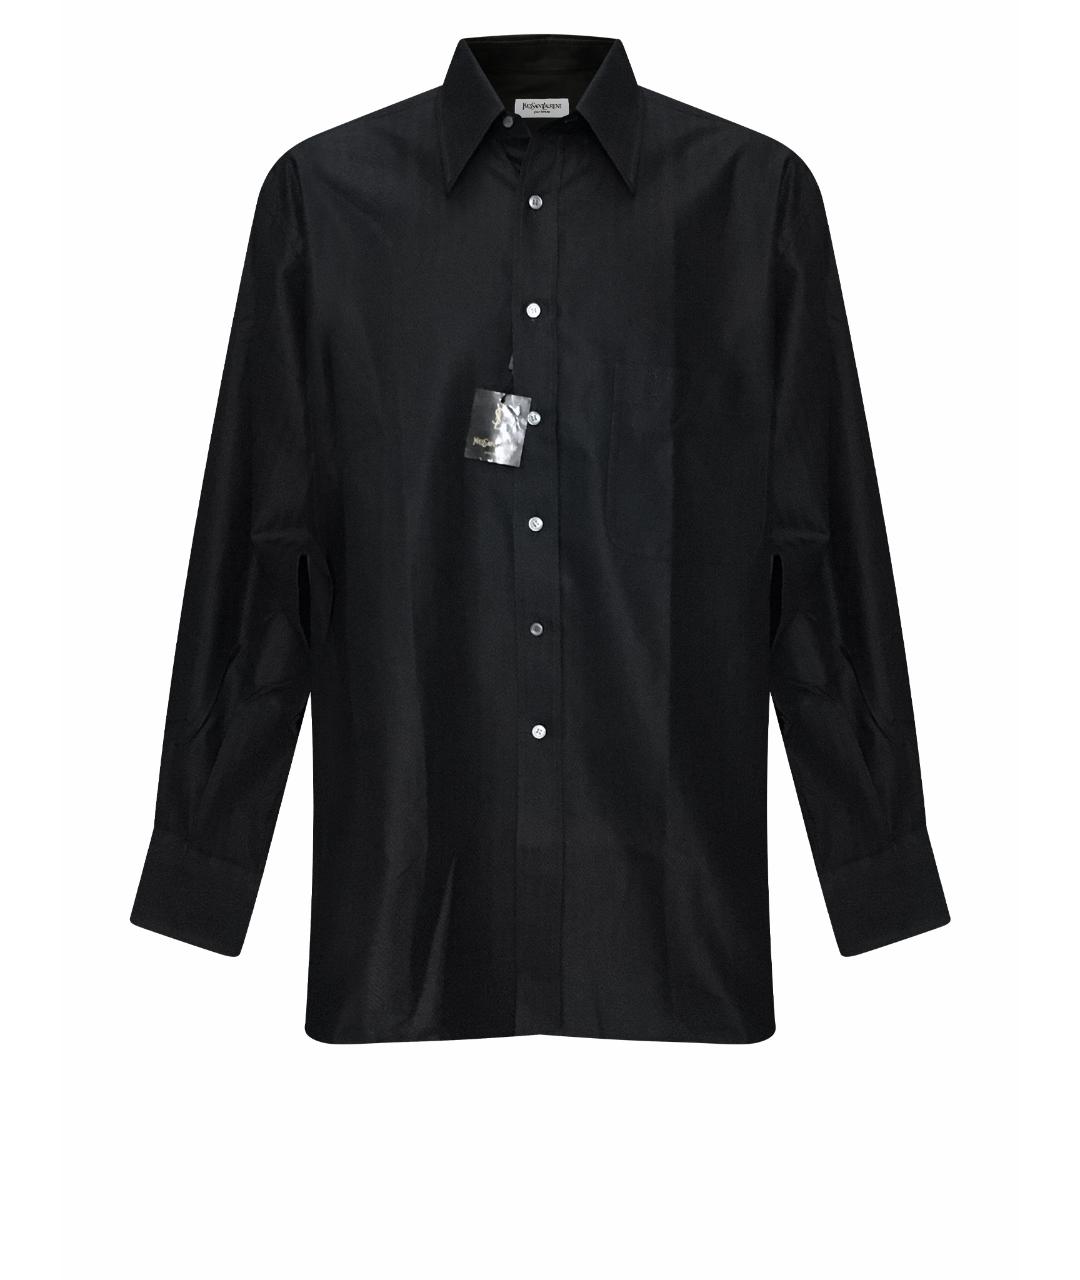 YVES SAINT LAURENT VINTAGE Черная хлопковая классическая рубашка, фото 1